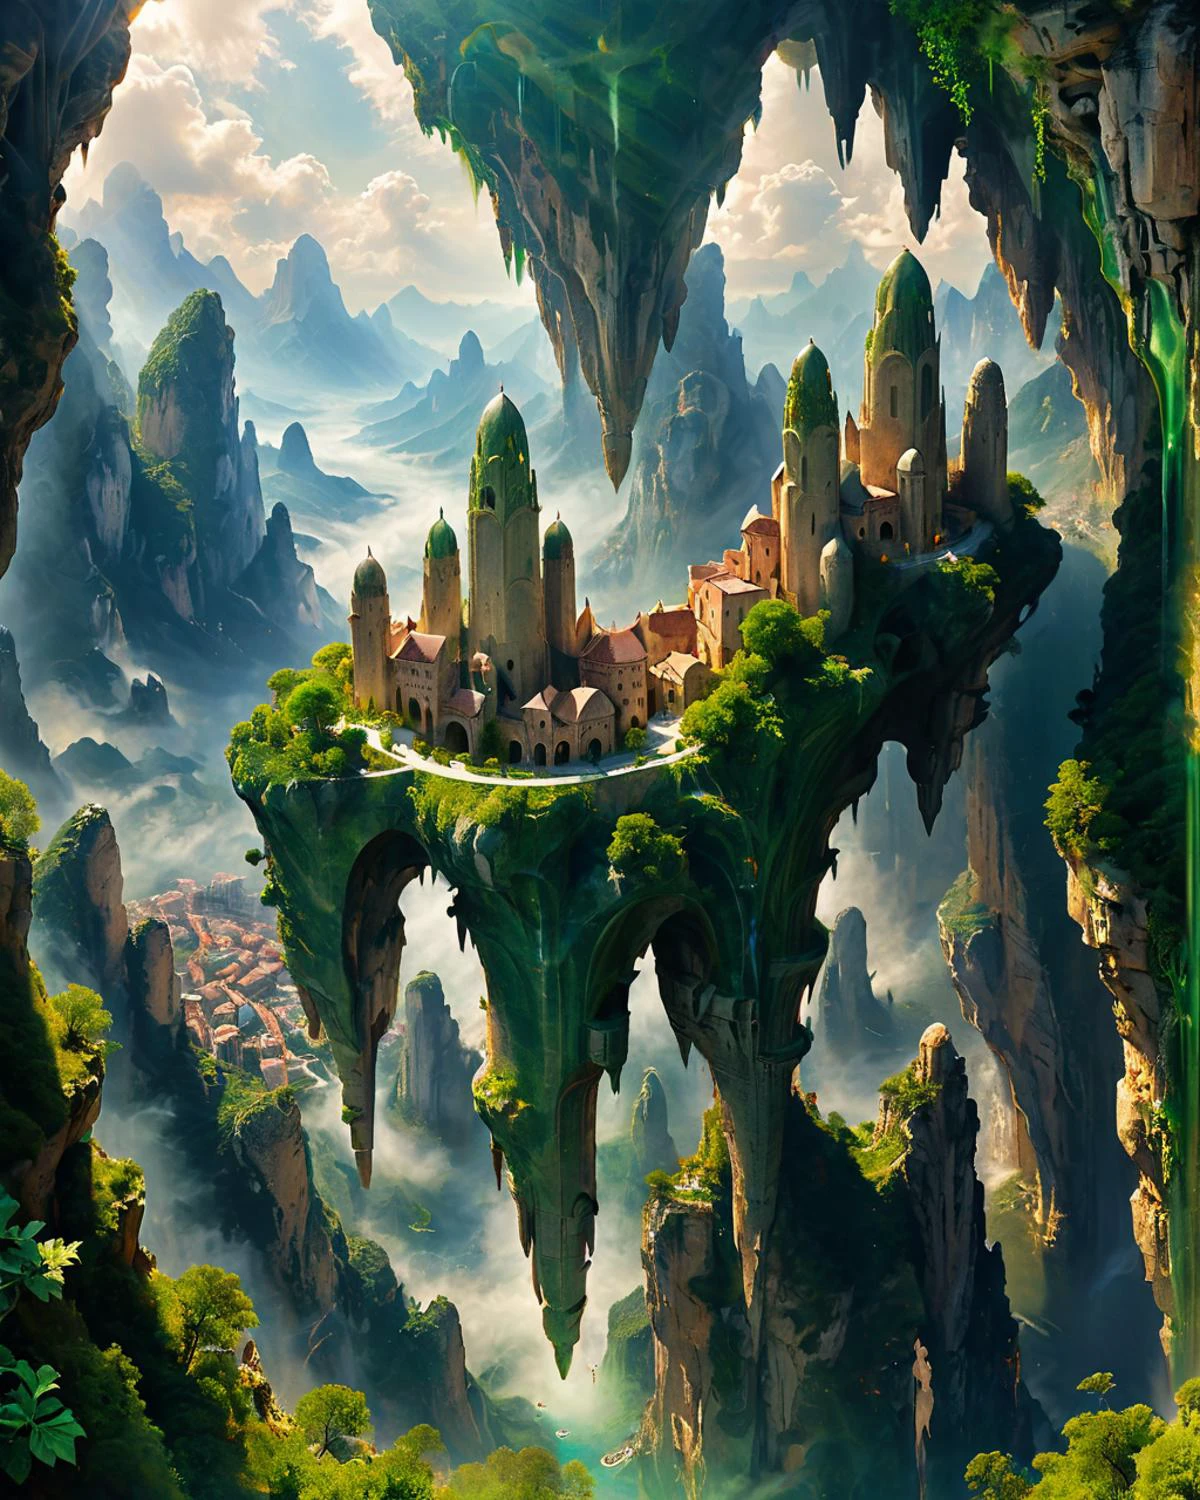 مدينة خيالية تطفو في السماء, أبراج رخامية خضراء رشيقة, انجرافات, الجبال, ينظر إليها من الأسفل, chiaroscuro, fenliexl